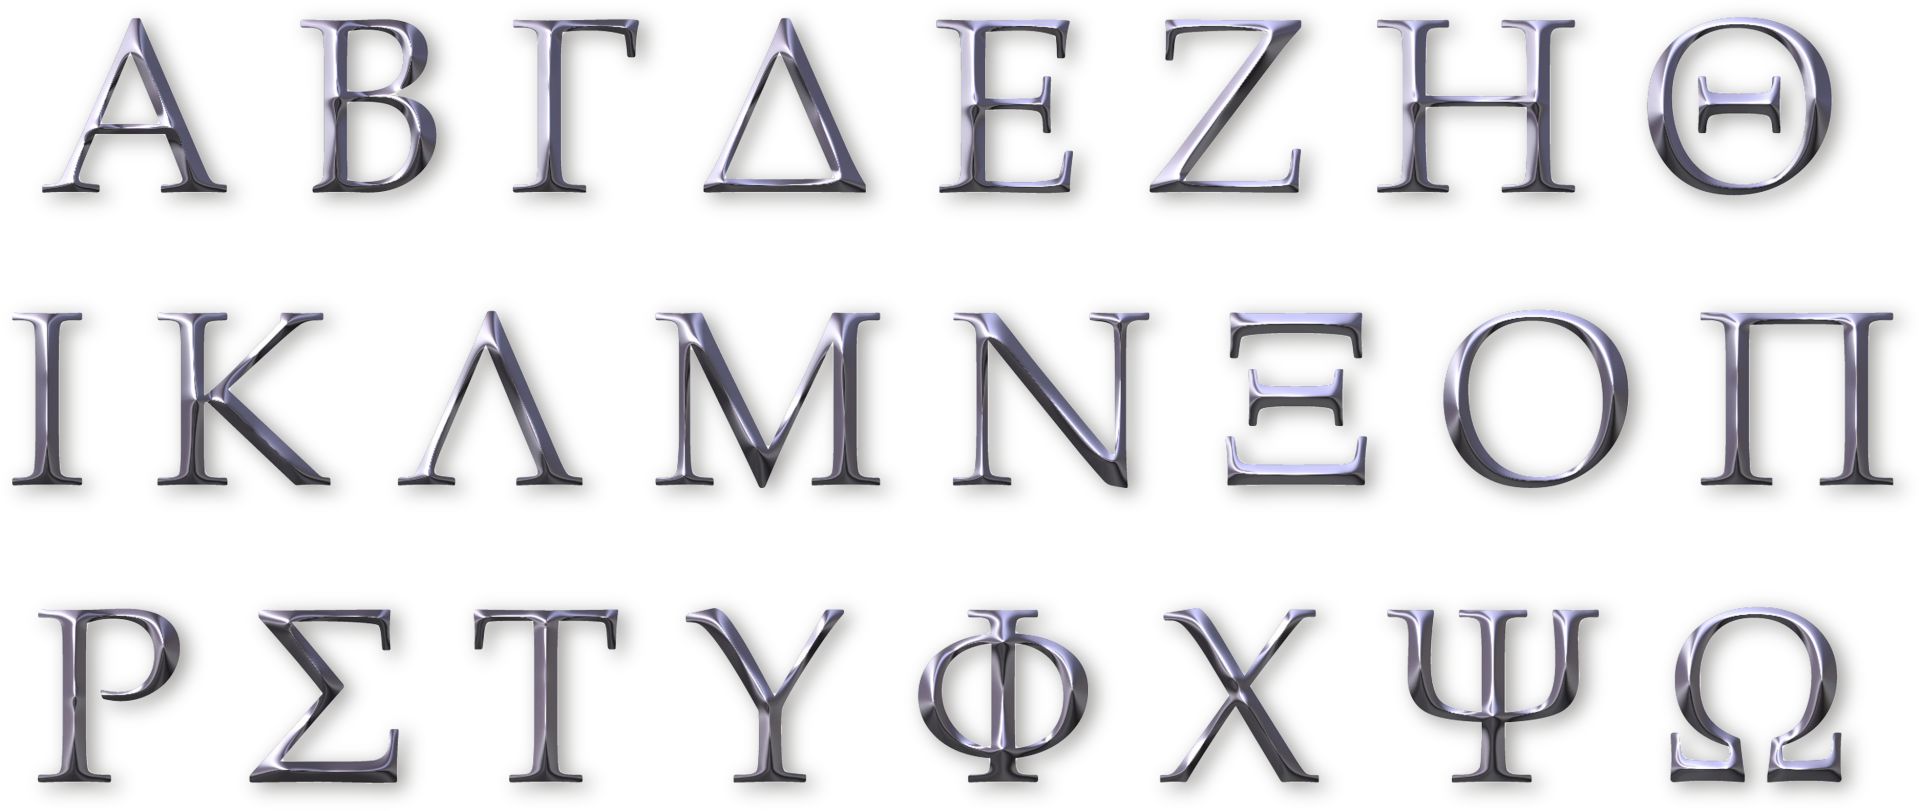 Alde Grikelân foar bern: Gryksk alfabet en letters